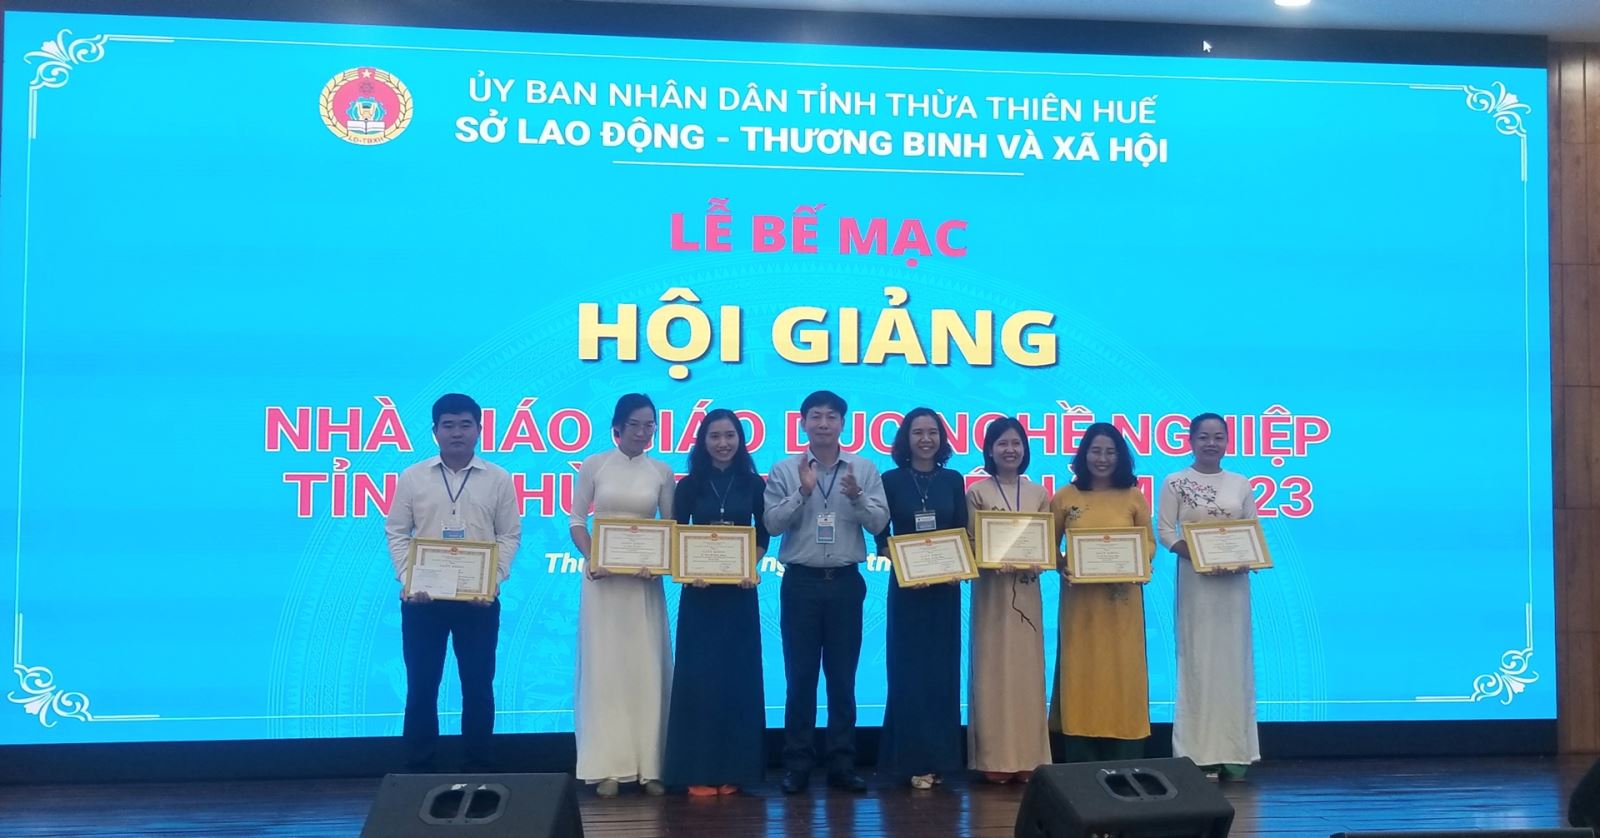 Hội giảng Nhà giáo GDNN tỉnh Thừa Thiên Huế năm 2023